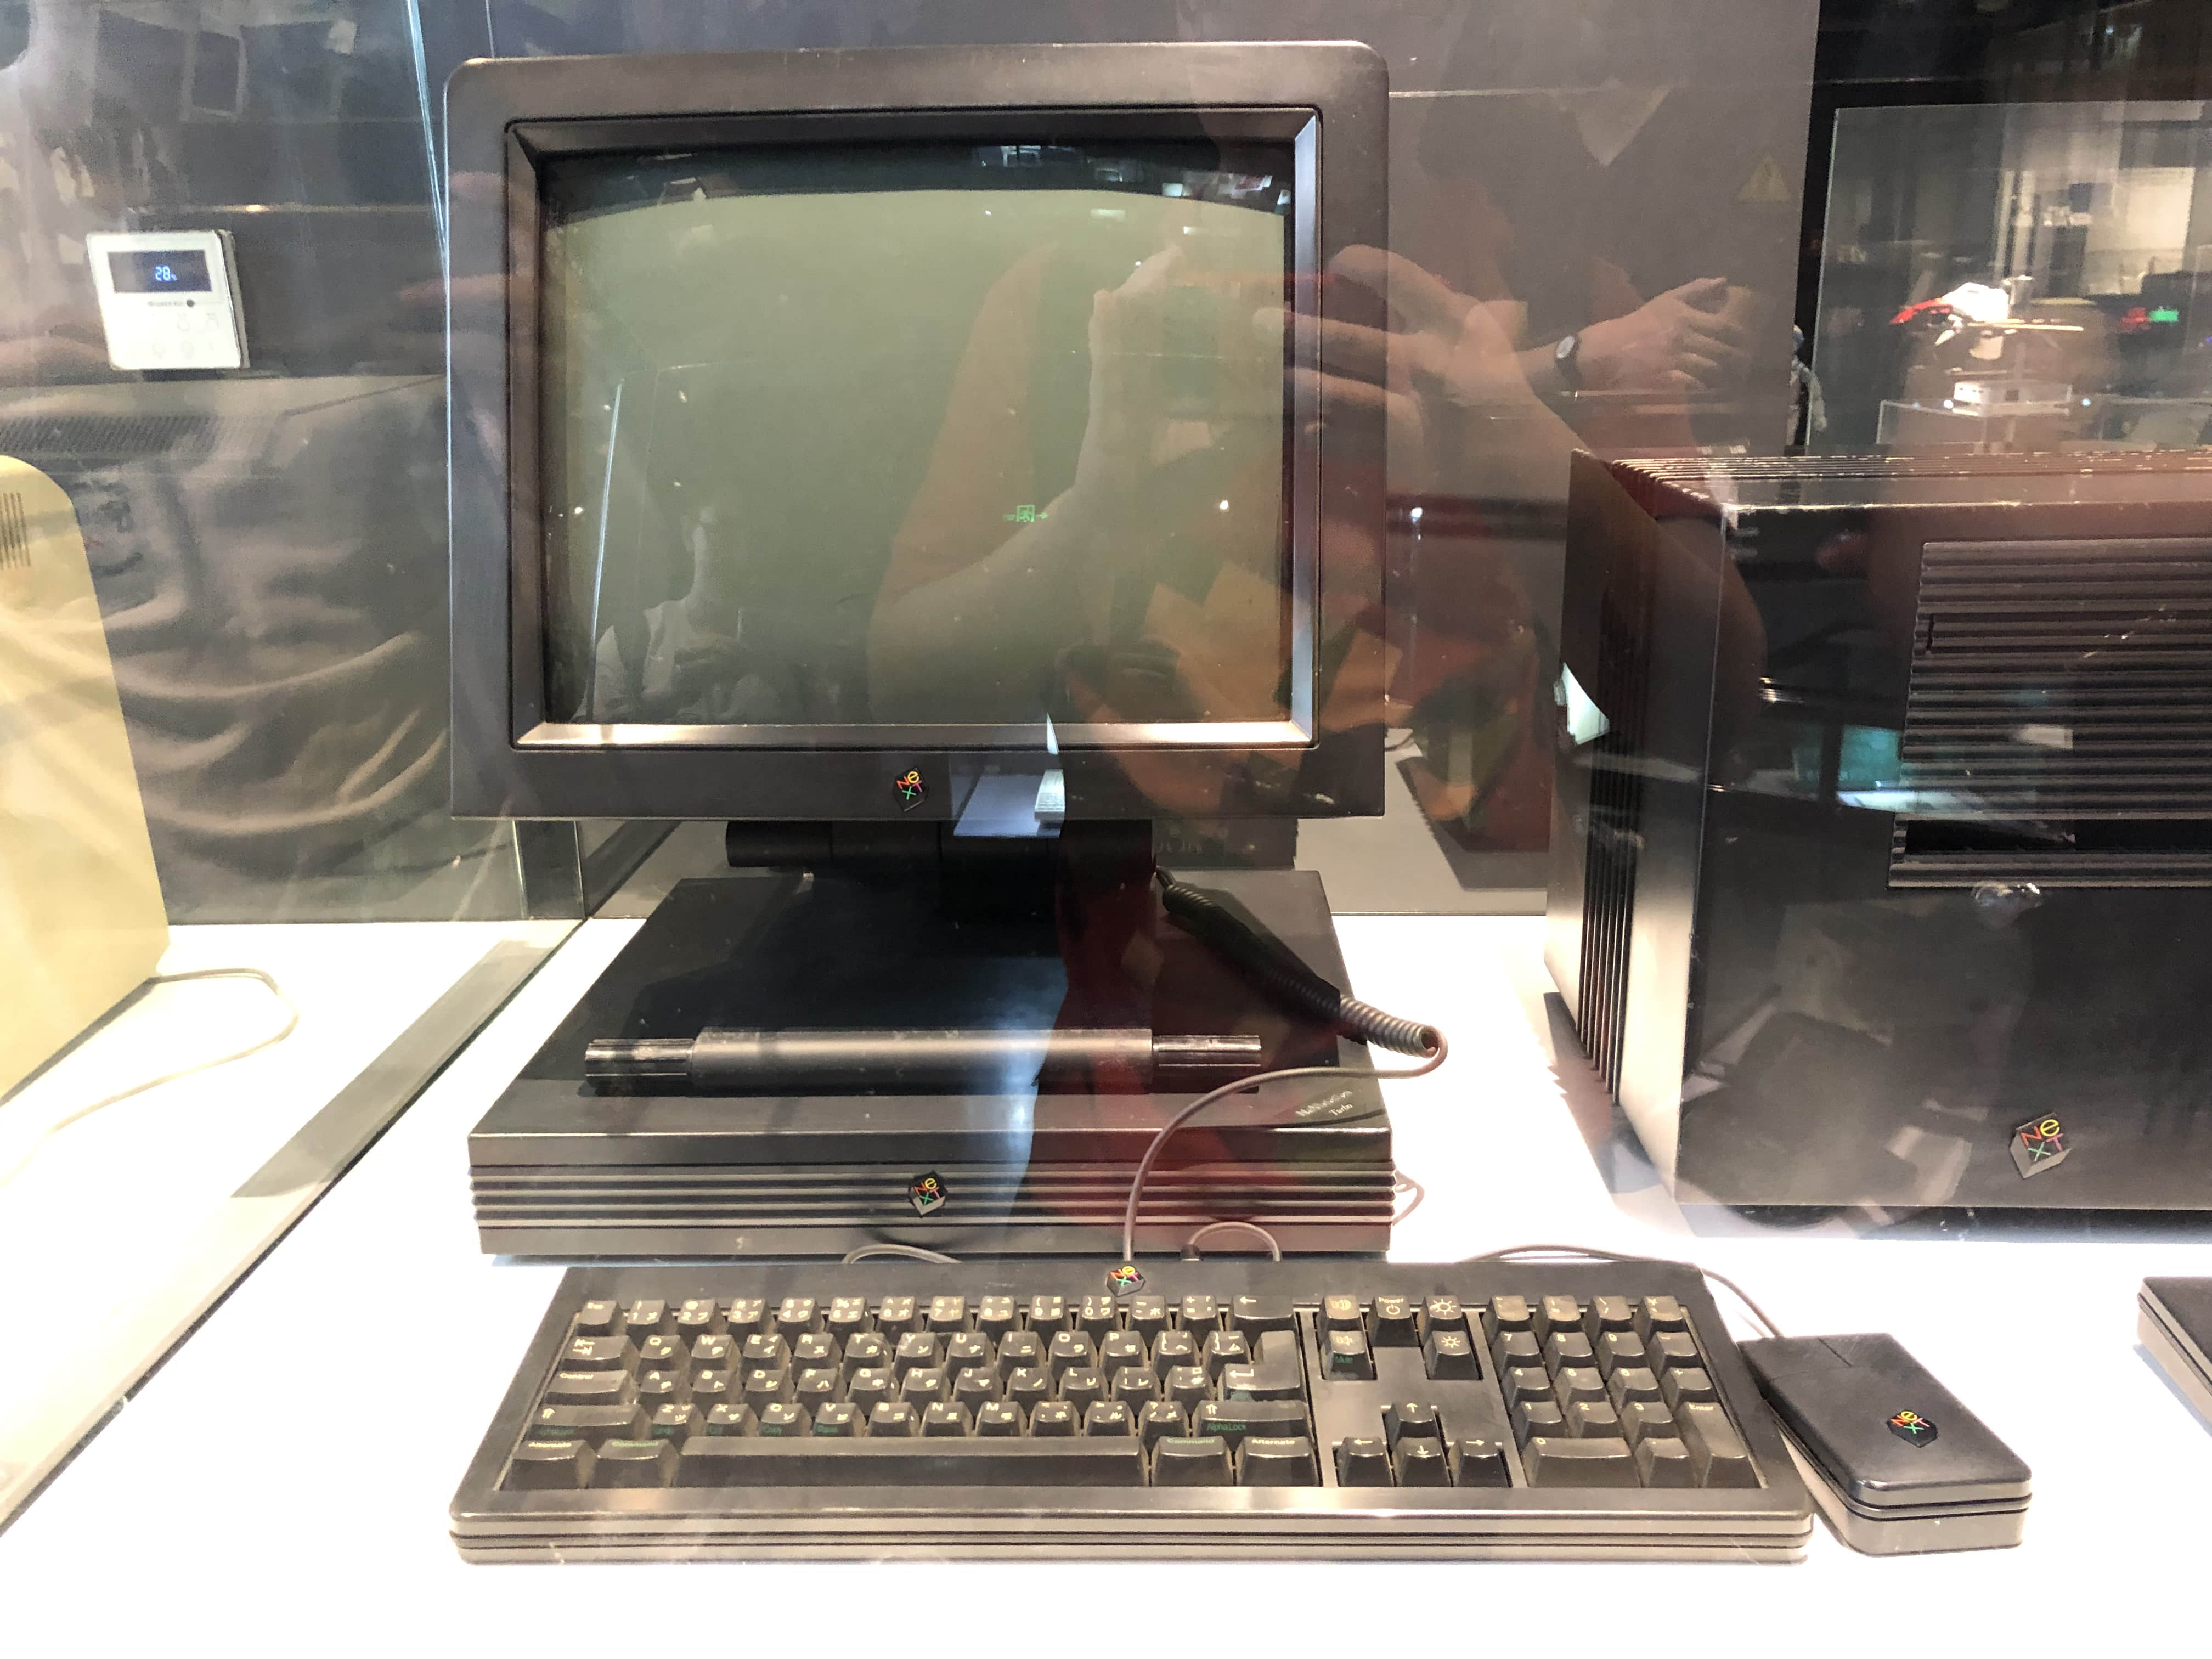 全是苹果电脑的博物馆,究竟有什么好看的?